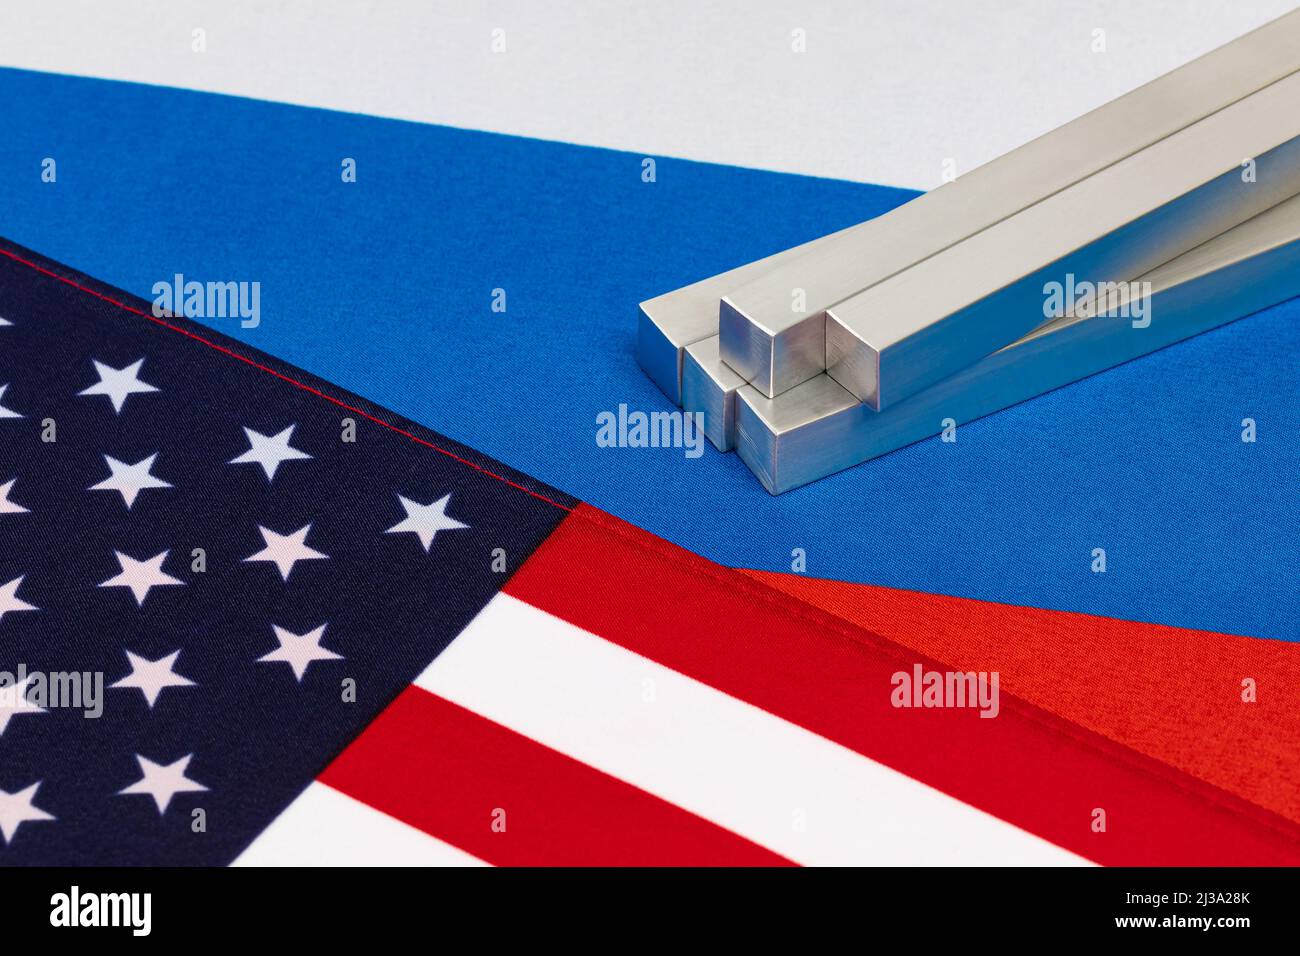 Métal d'aluminium et drapeaux des États-Unis et de la Russie. Sanctions commerciales, exportations de métaux et concept de fabrication Banque D'Images